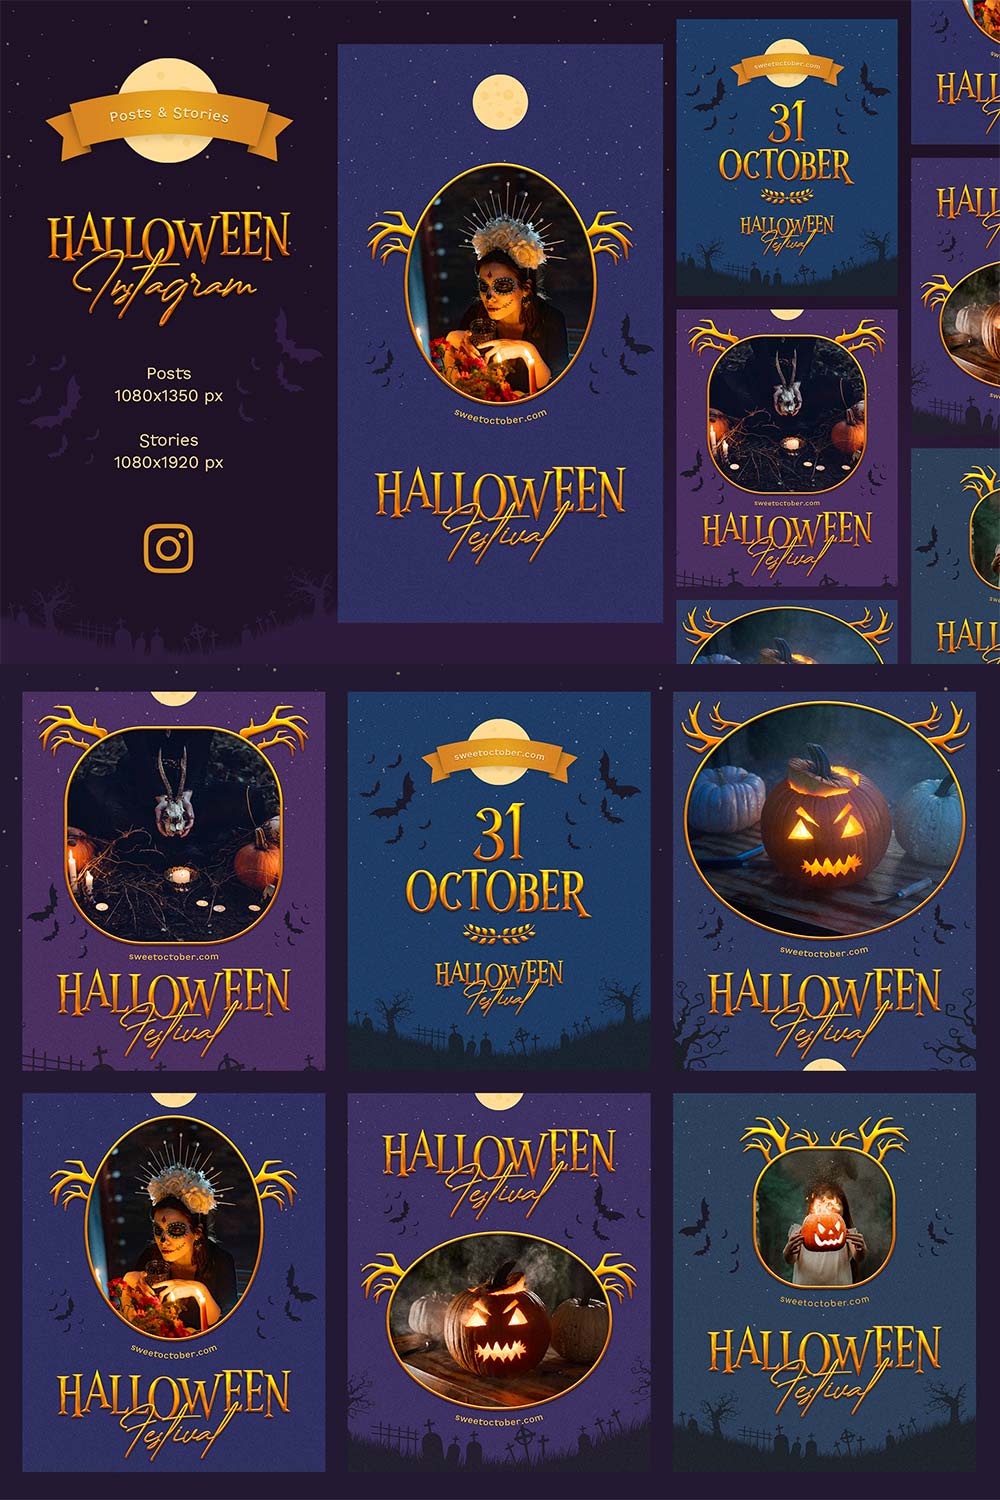 Halloween Instagram pinterest preview image.